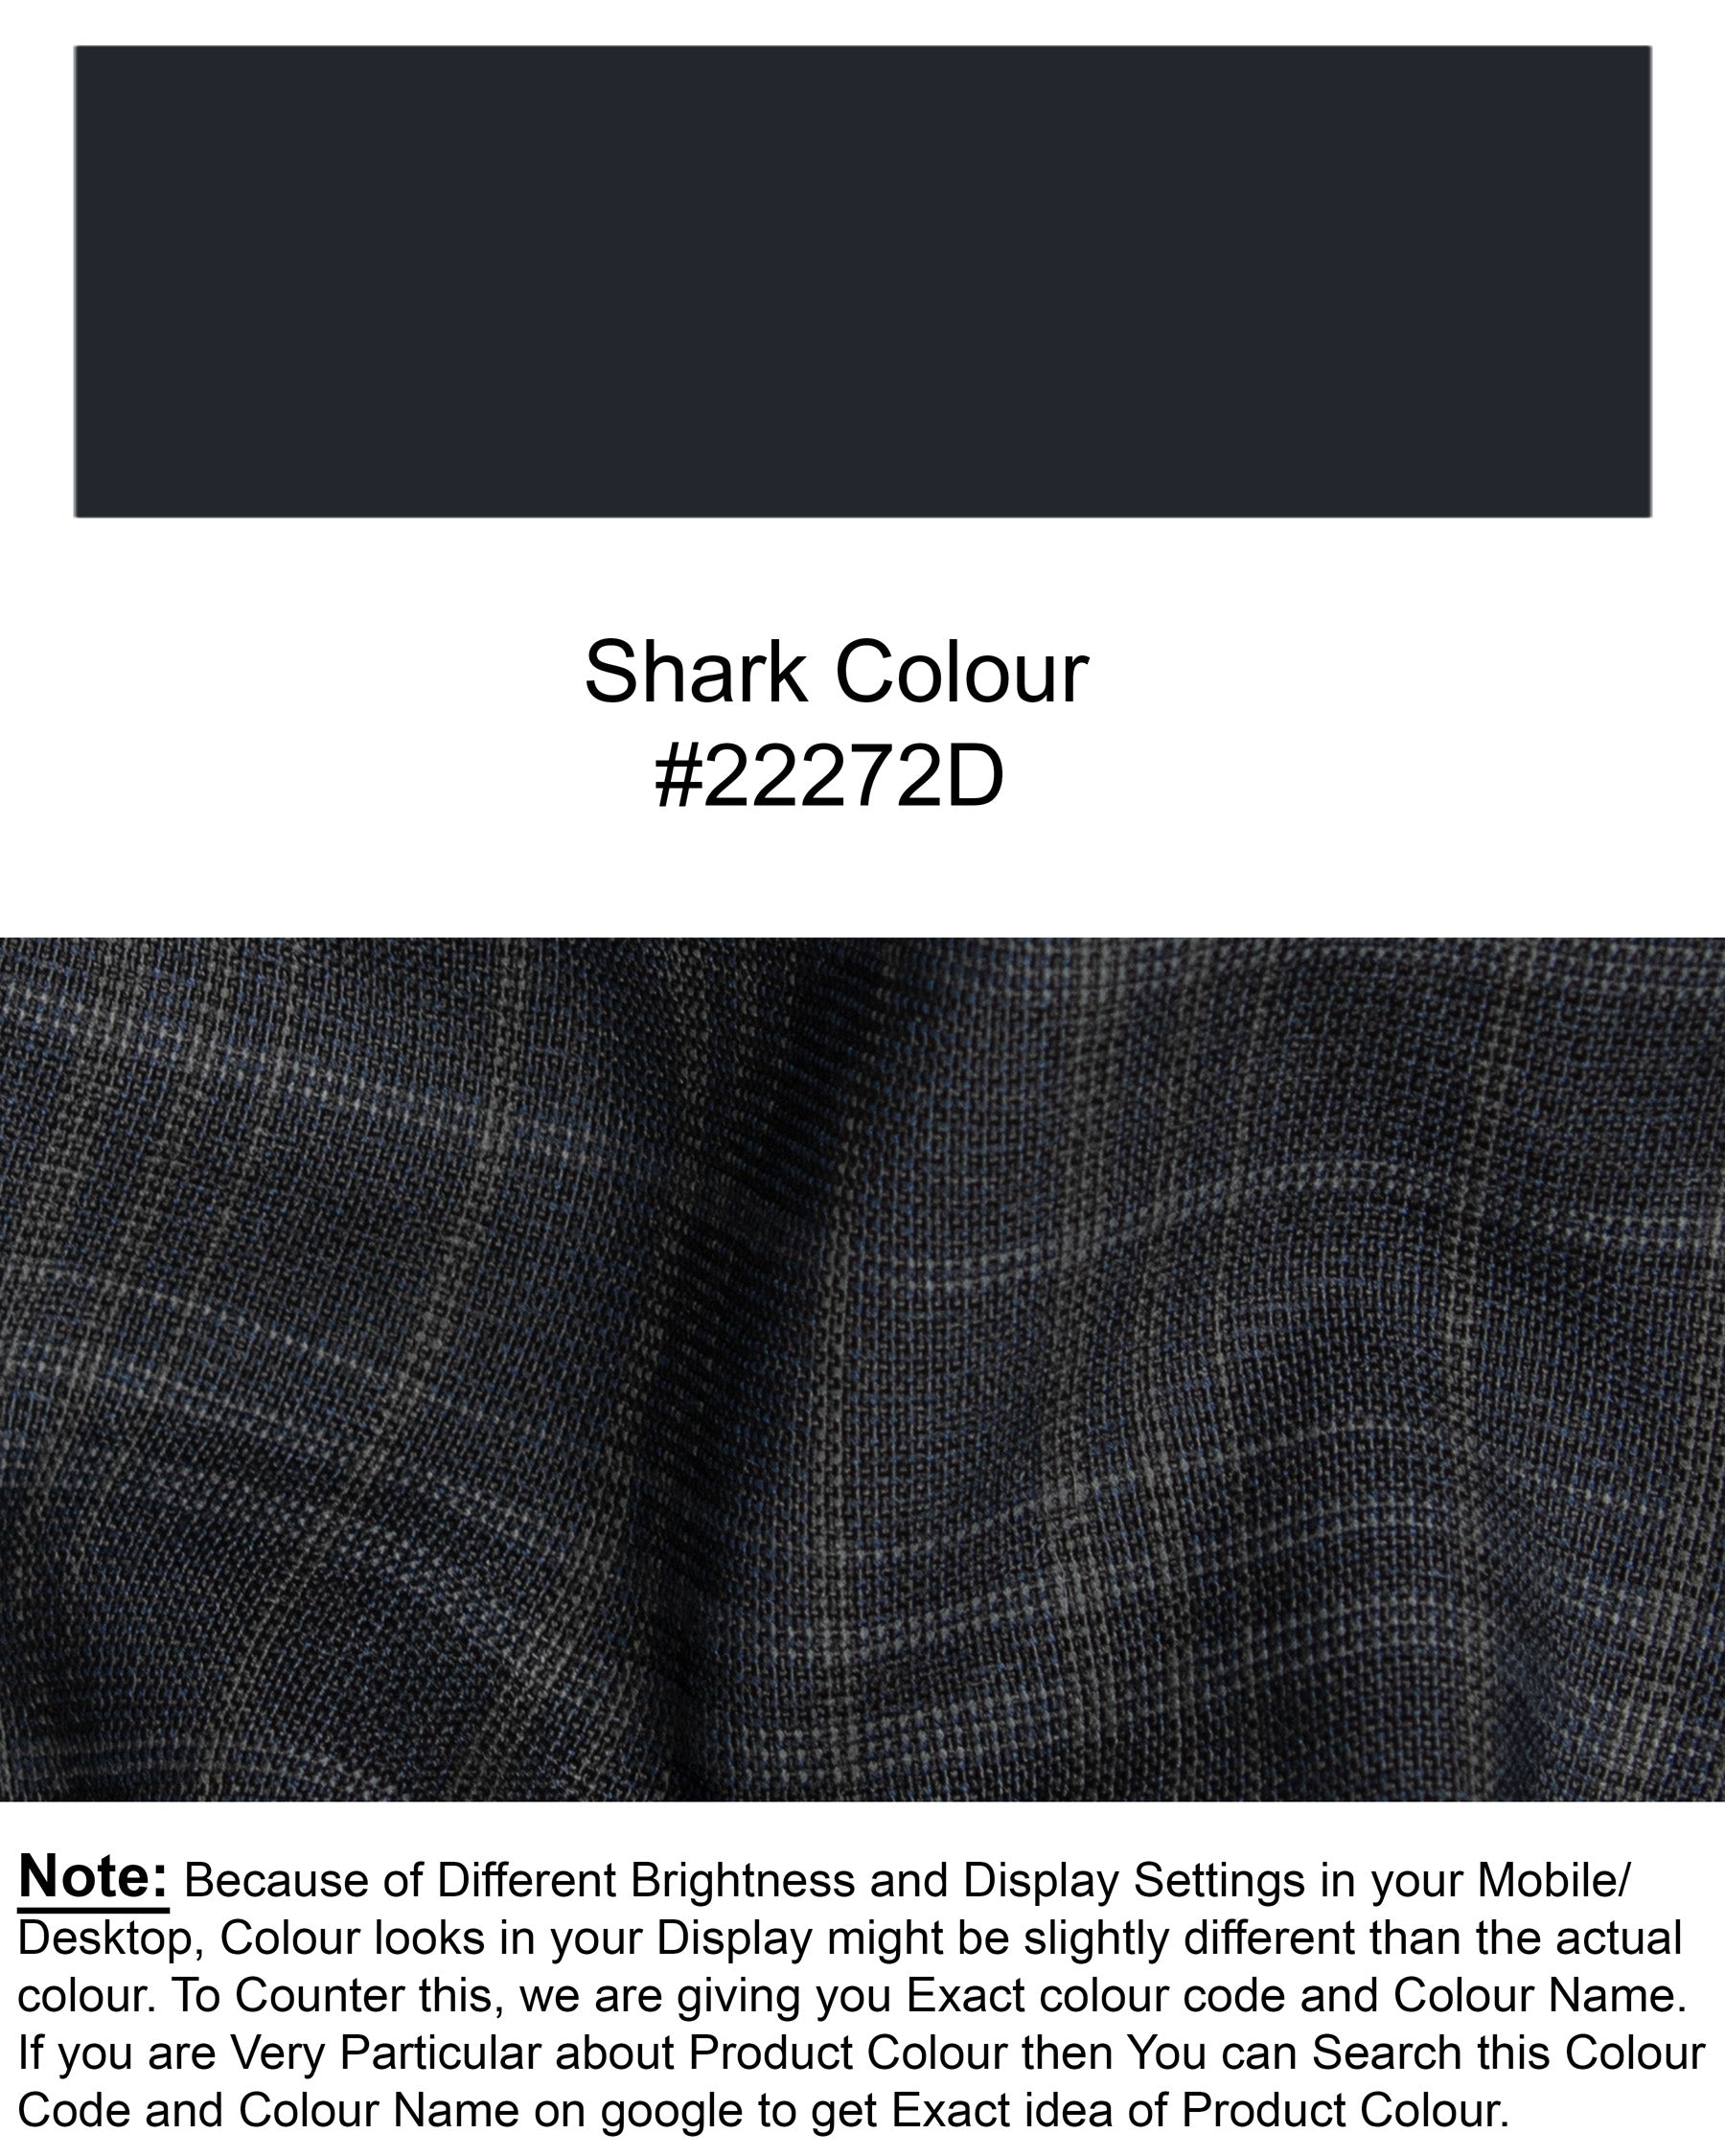 Shark Gray Plaid Wool Rich Blazer BL1330-SB-36, BL1330-SB-38, BL1330-SB-40, BL1330-SB-42, BL1330-SB-44, BL1330-SB-46, BL1330-SB-48, BL1330-SB-50, BL1330-SB-52, BL1330-SB-54, BL1330-SB-56, BL1330-SB-58, BL1330-SB-60